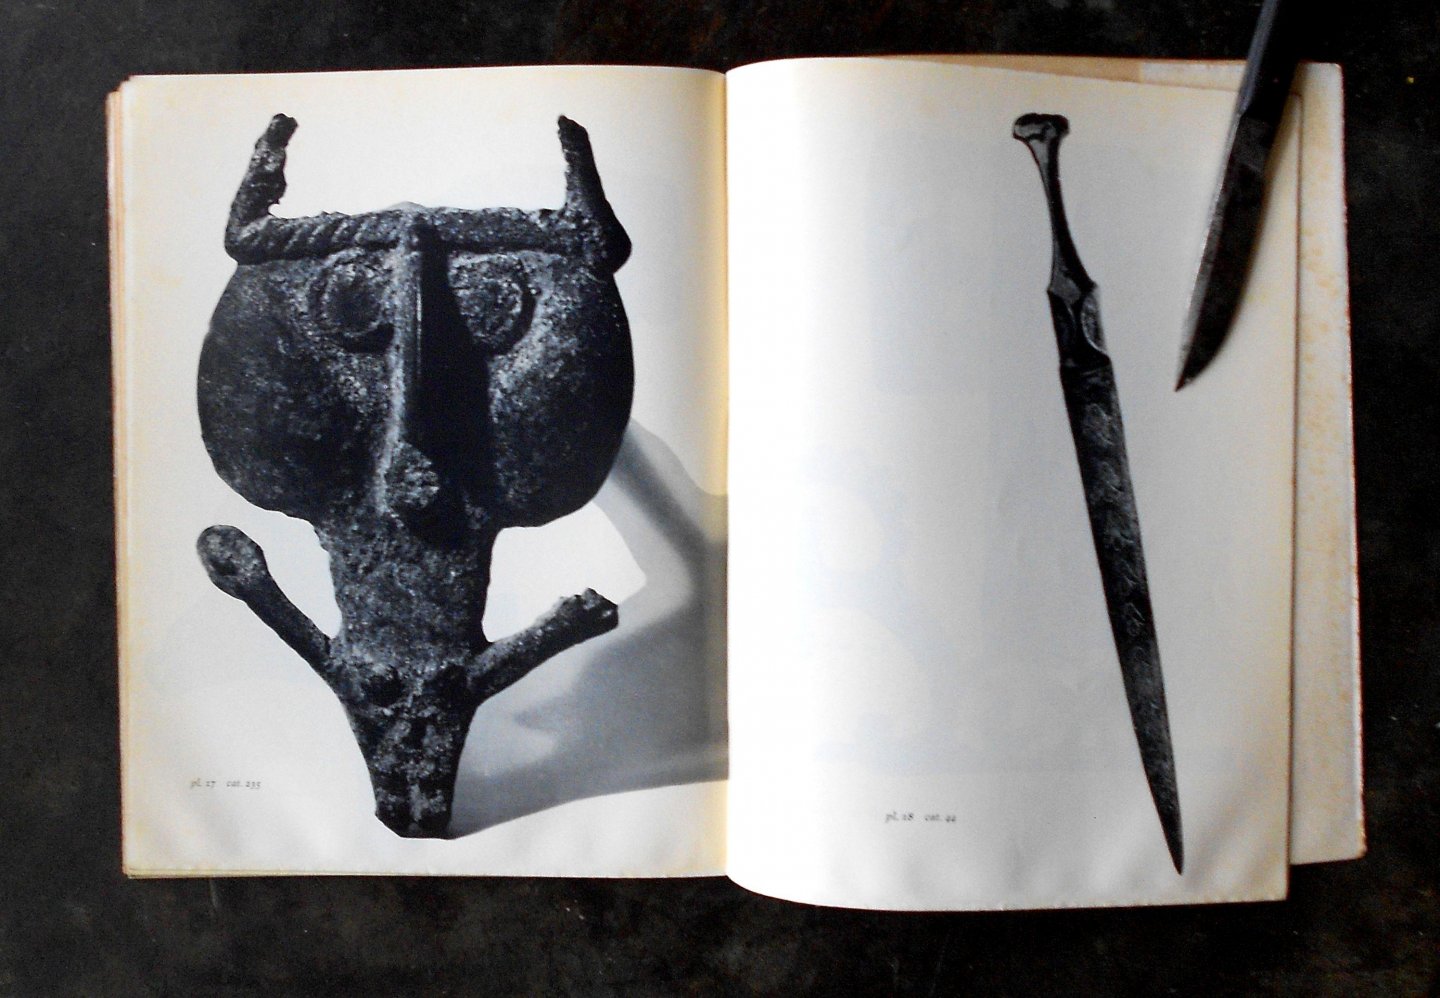 Godard, Y.Et A. - Bronzes du Luristan. avec 33 reproductions. Collection E. Graeffe